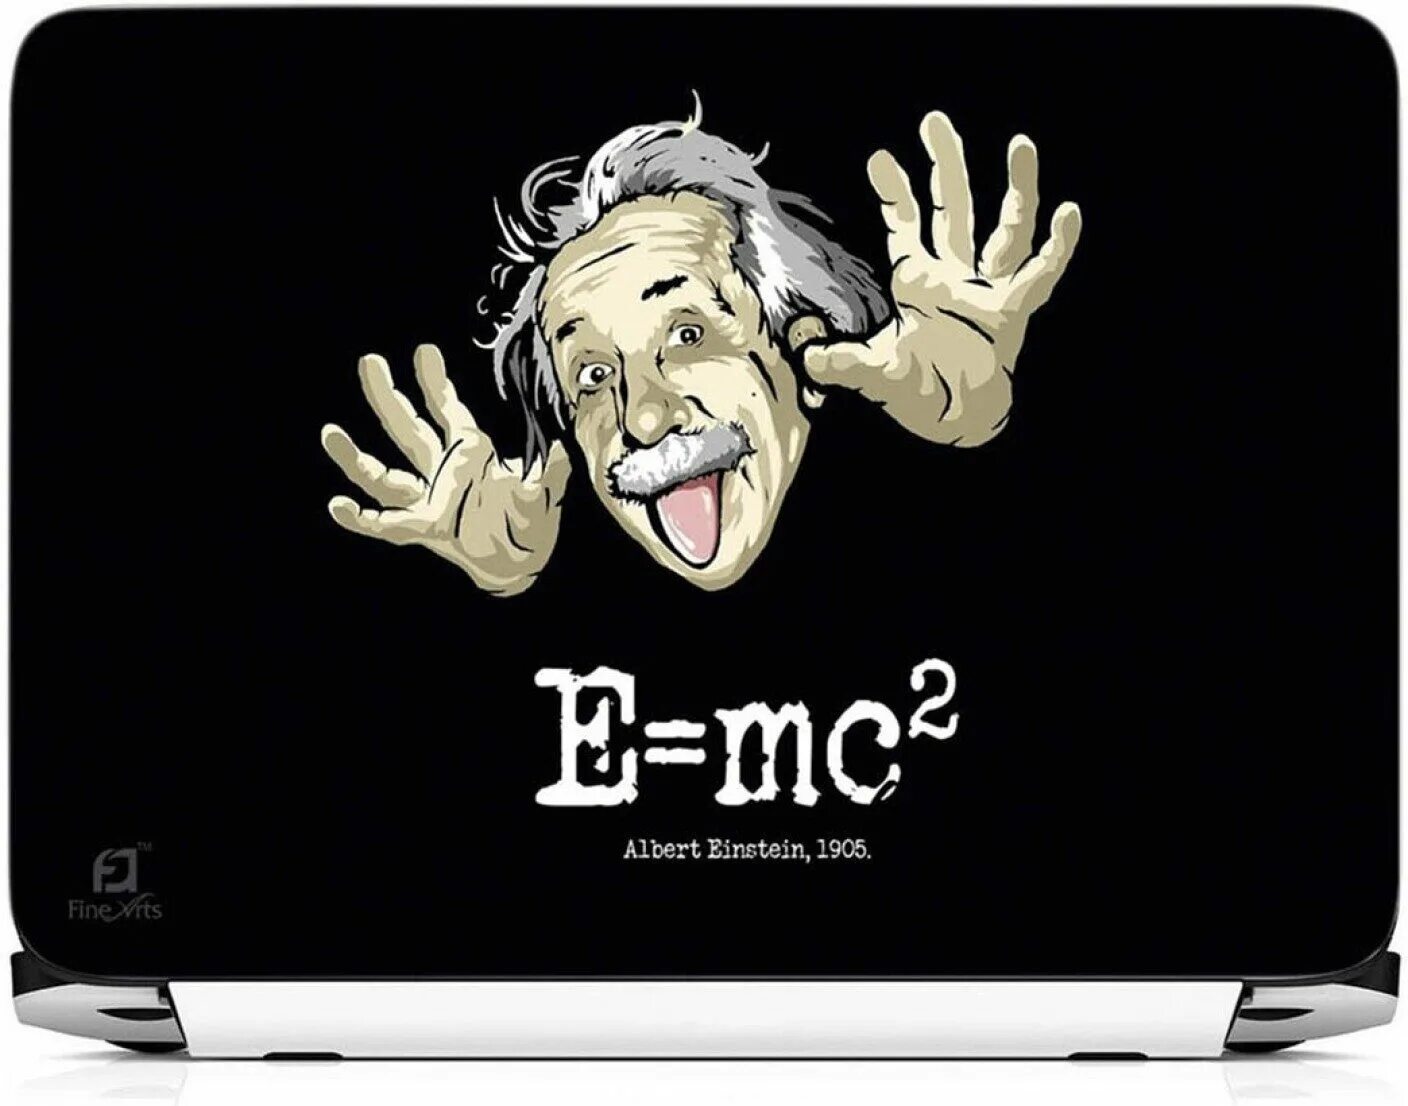 Е равно мс. Формула Эйнштейна e mc2. E=mc².